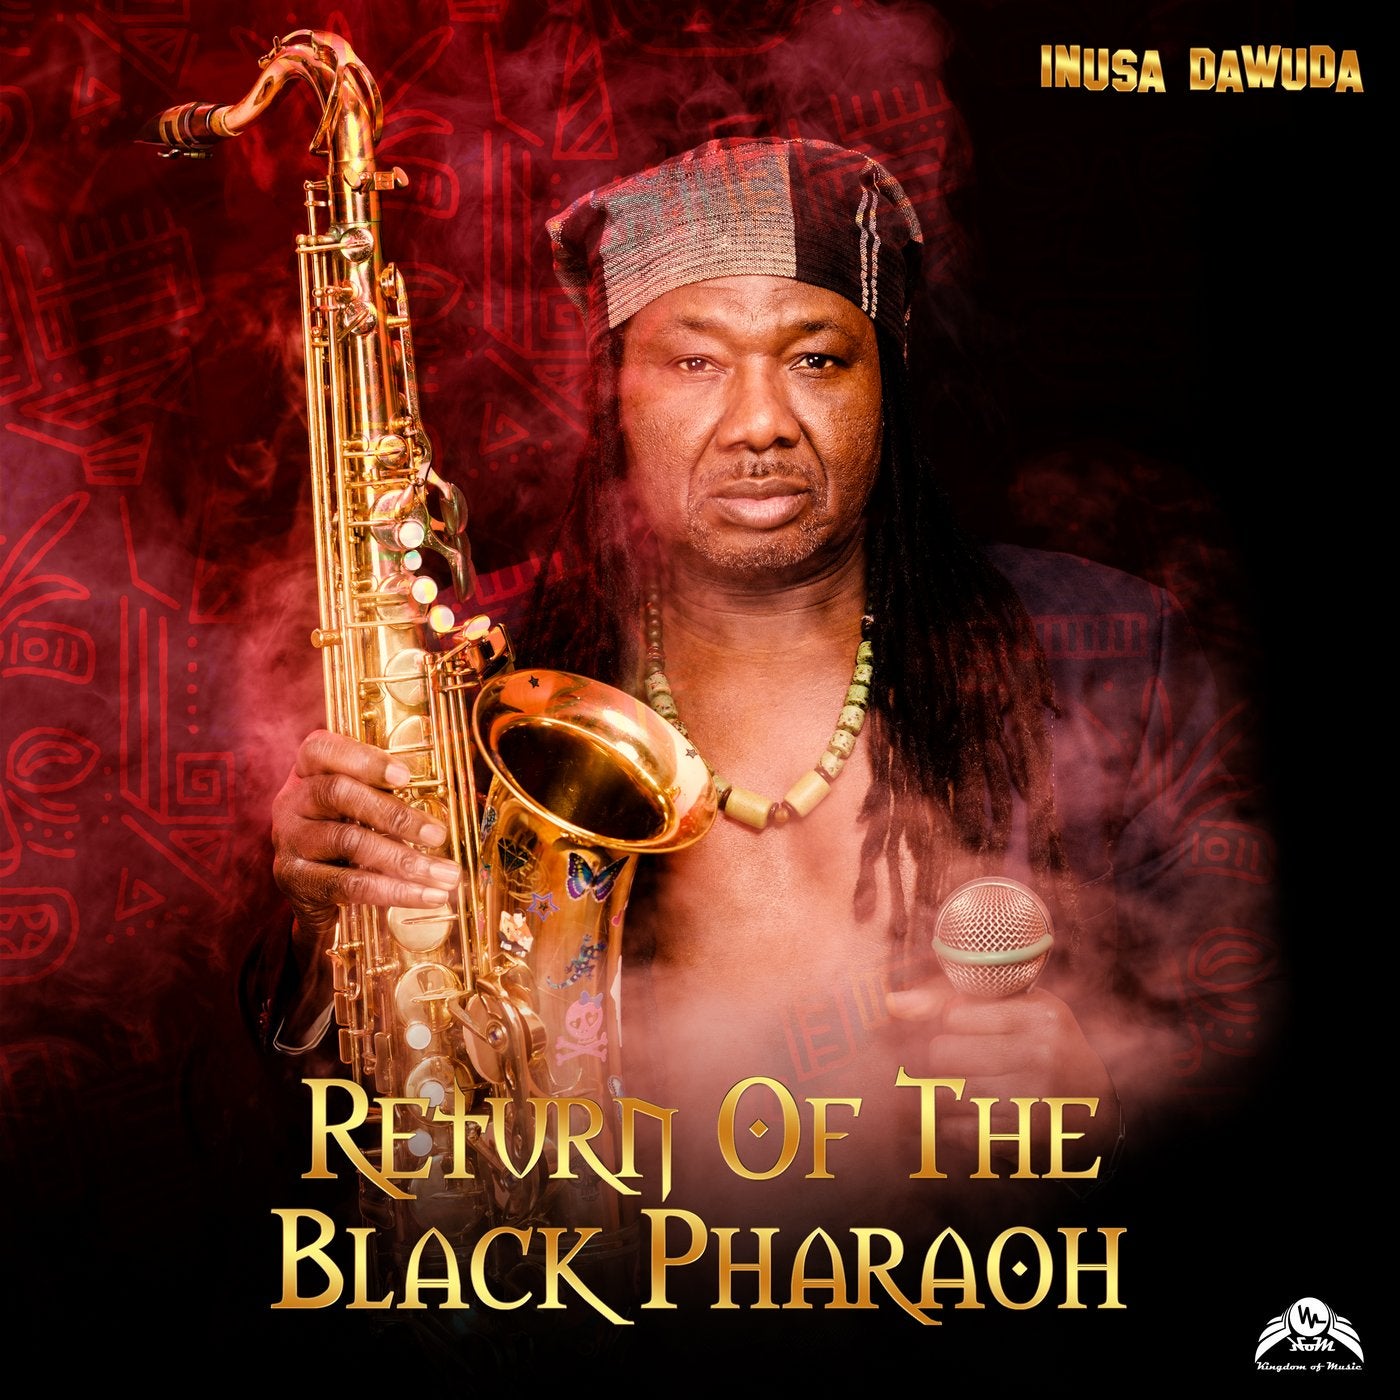 Return of the Black Pharaoh